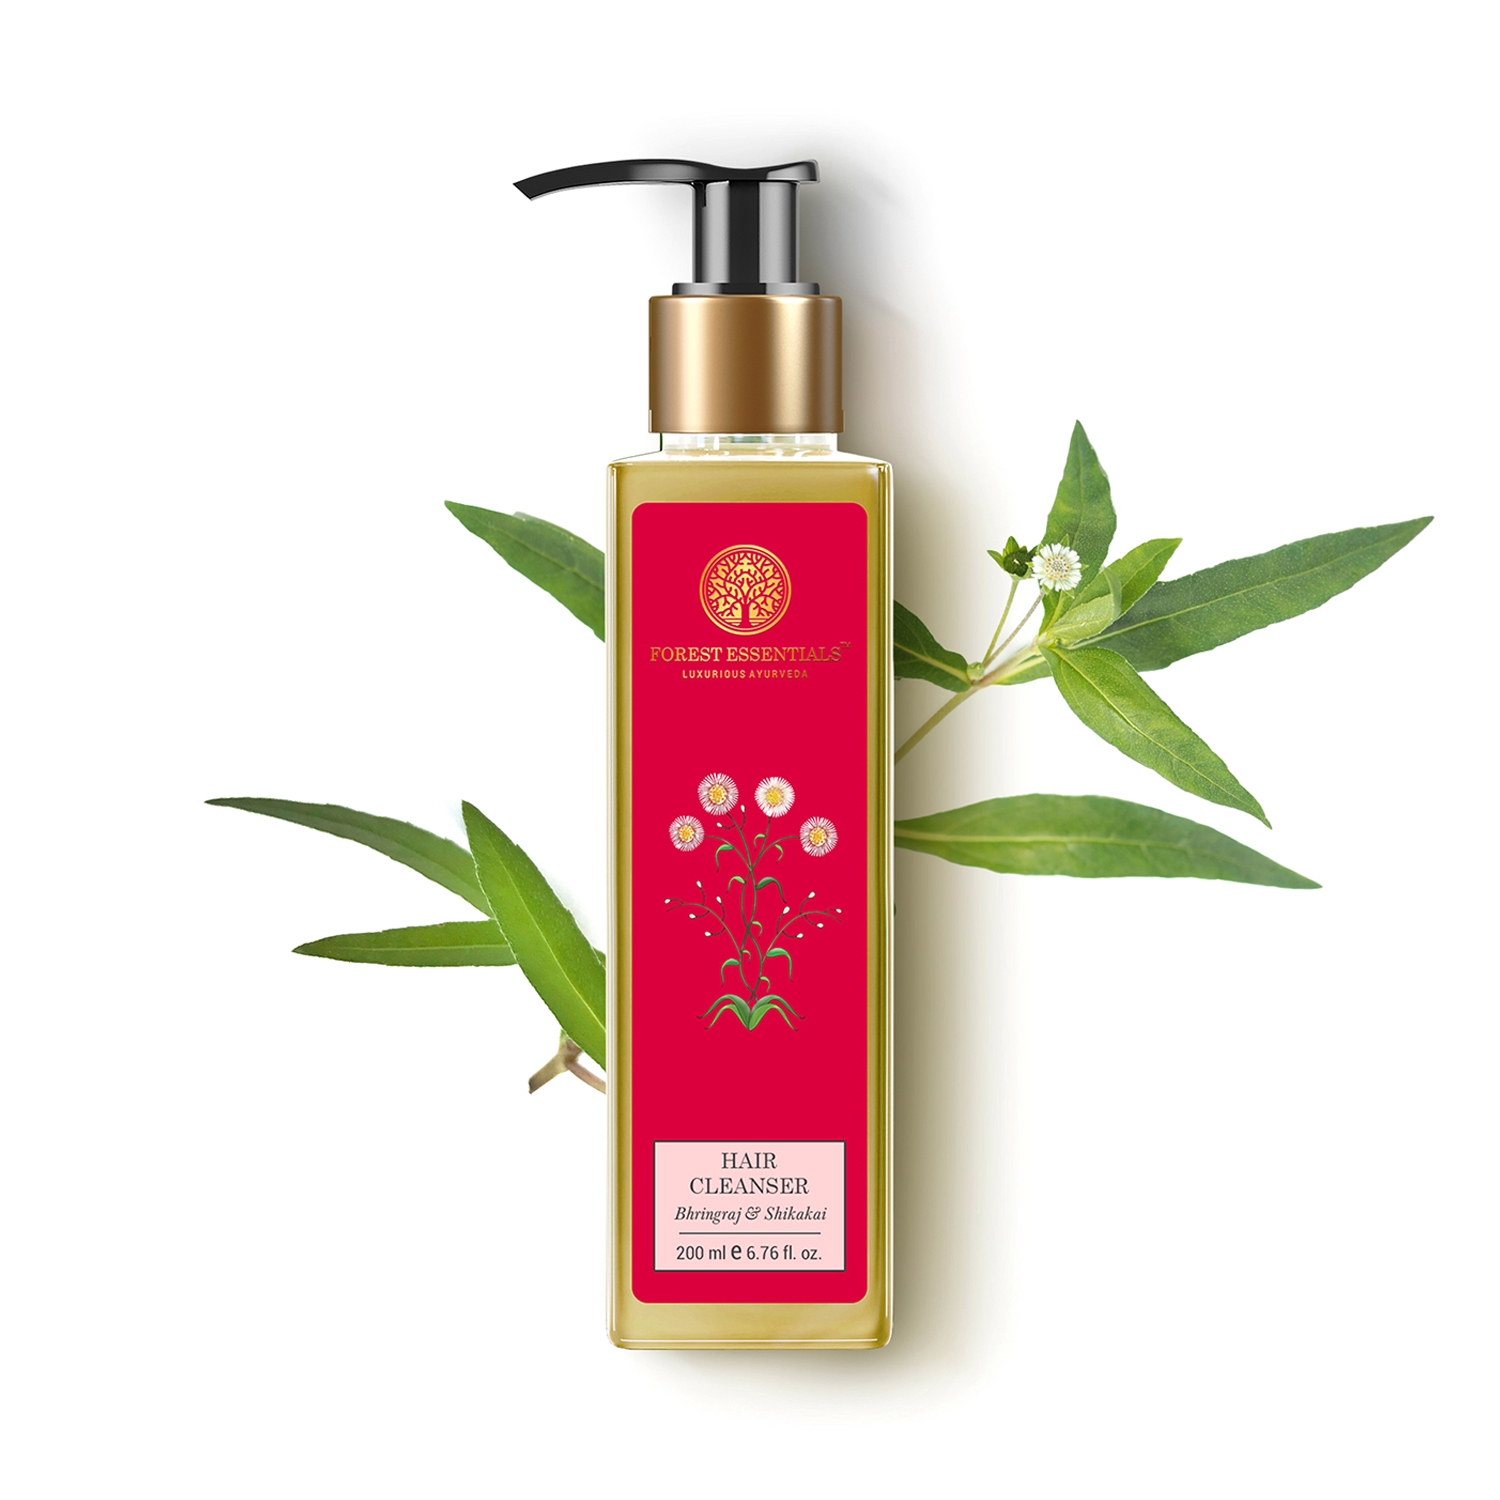 Forest Essentials | Forest Essentials Bhringraj & Shikakai Hair Cleanser Shampoo (200ml)